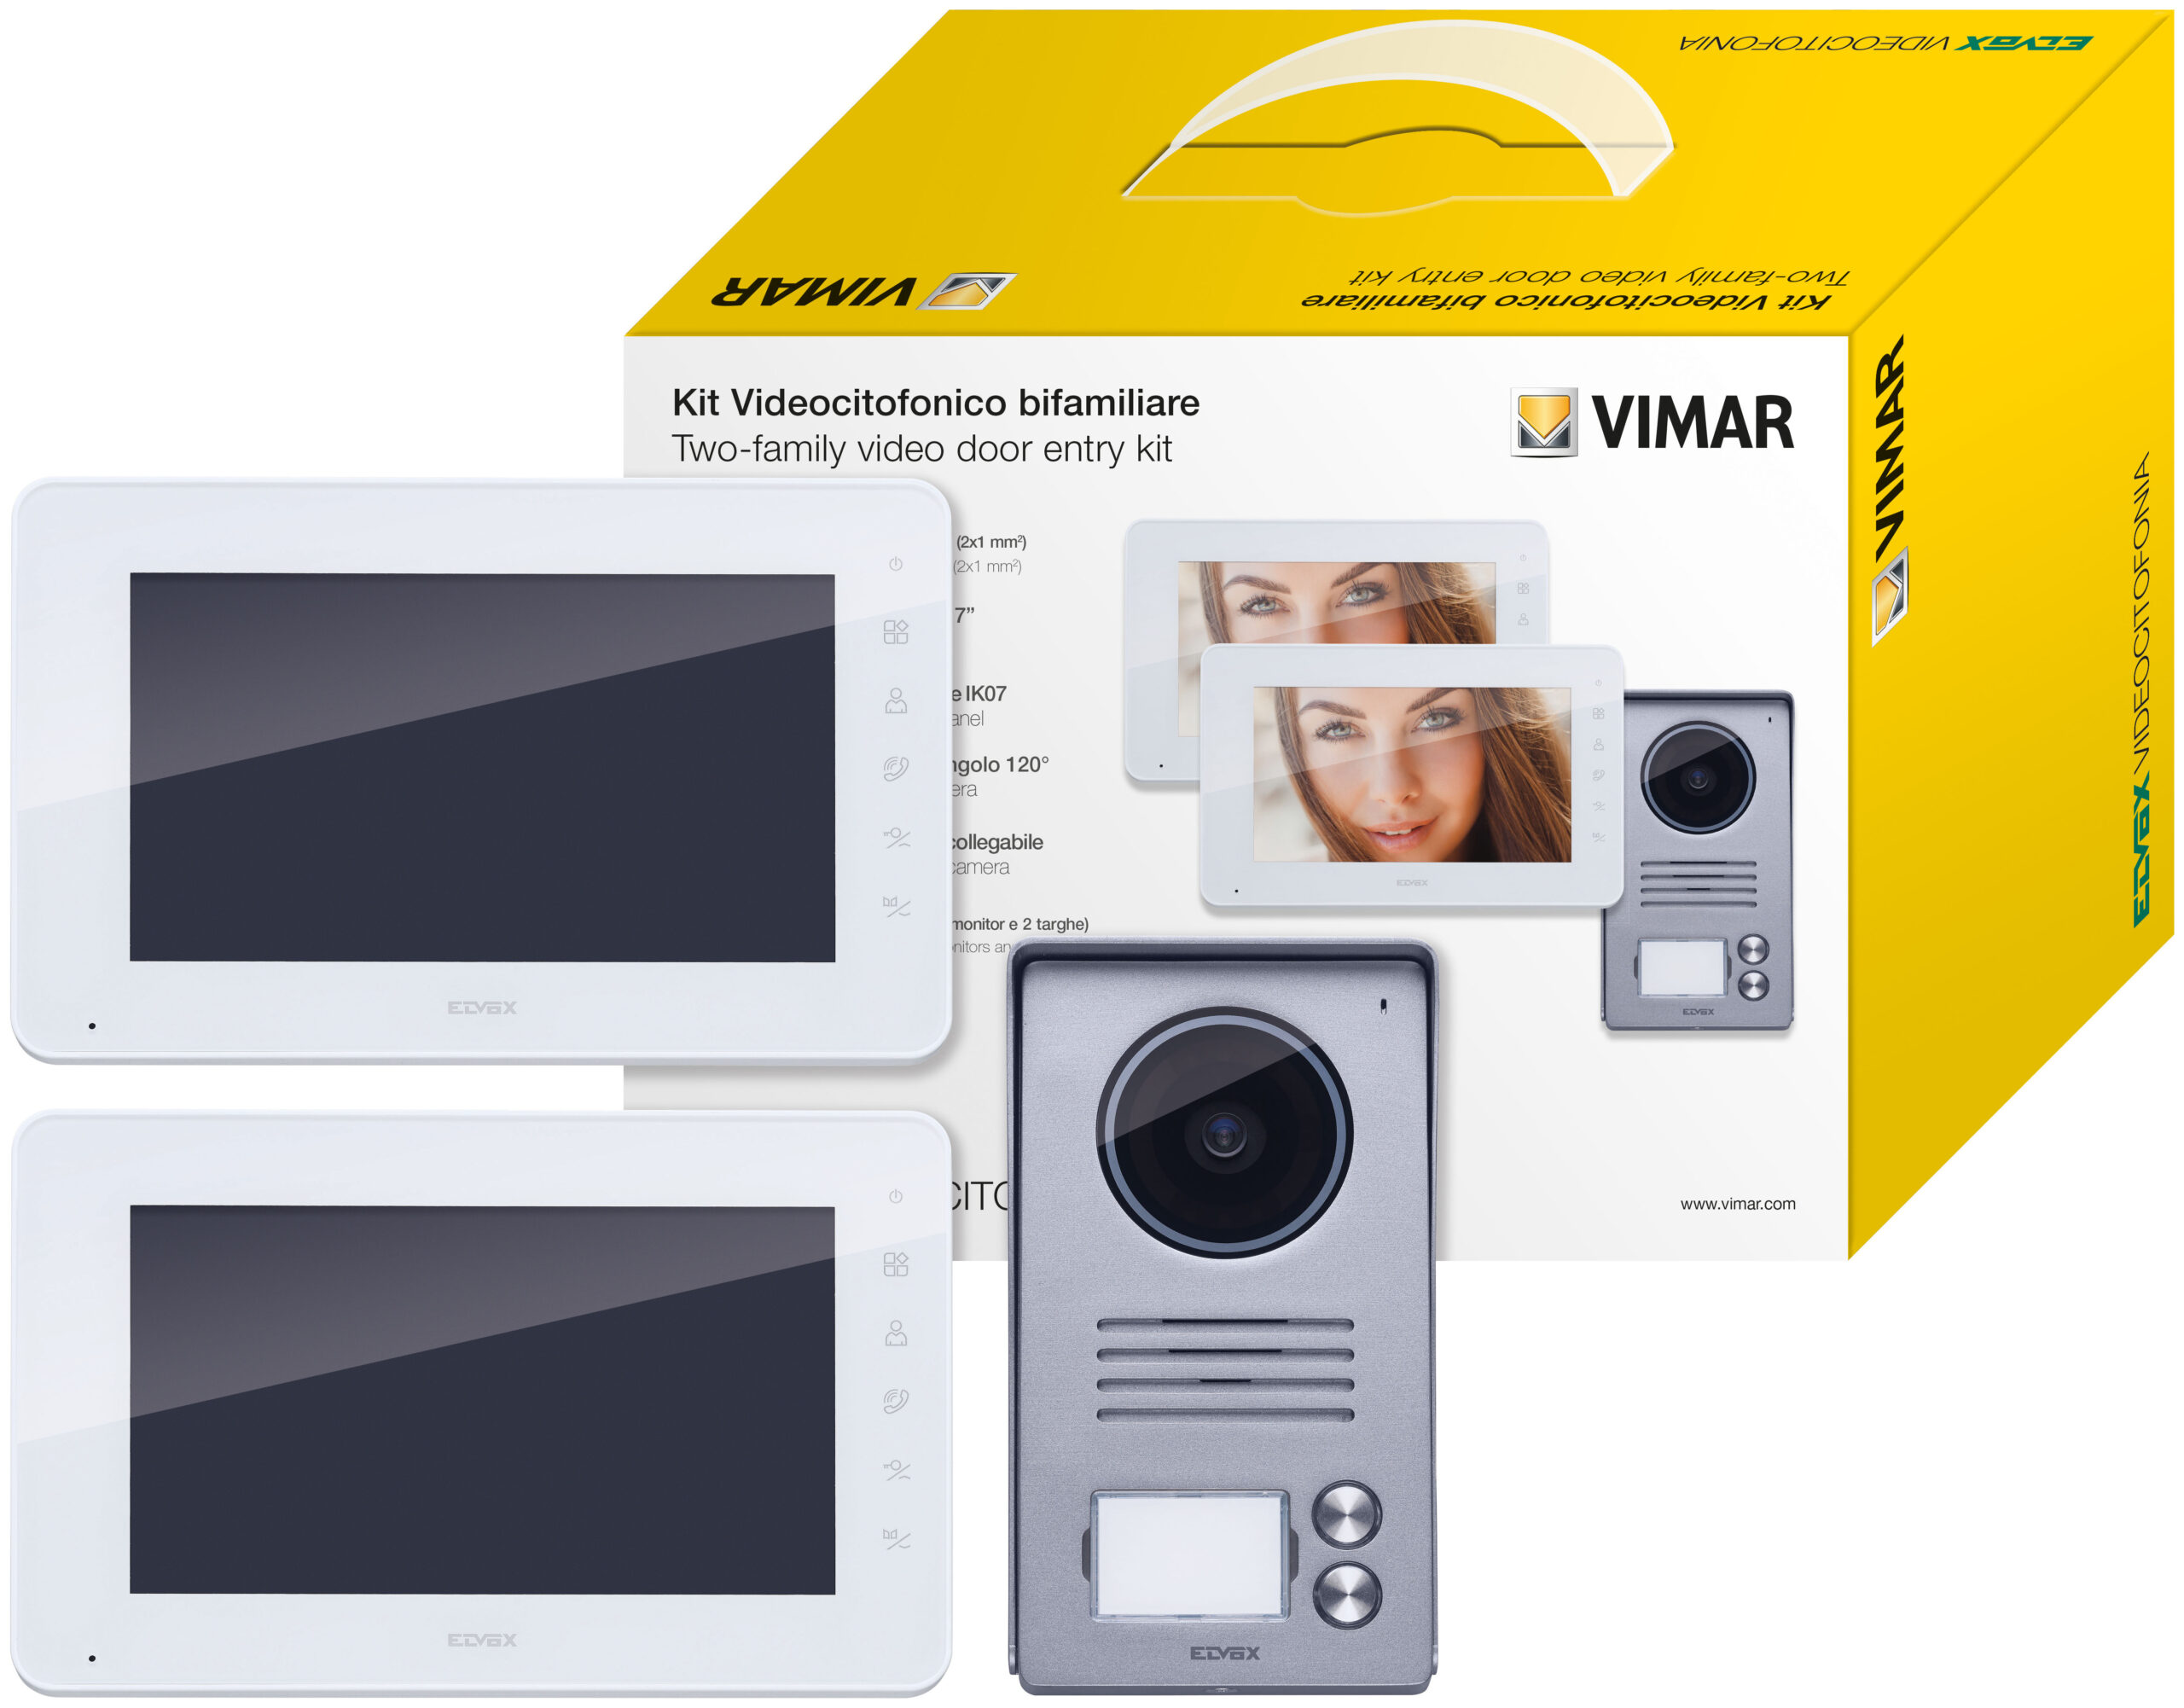 k40931-vimar-elvox-videocitofonia-kit-video-7in-bifam-alim-din.79866.jpg